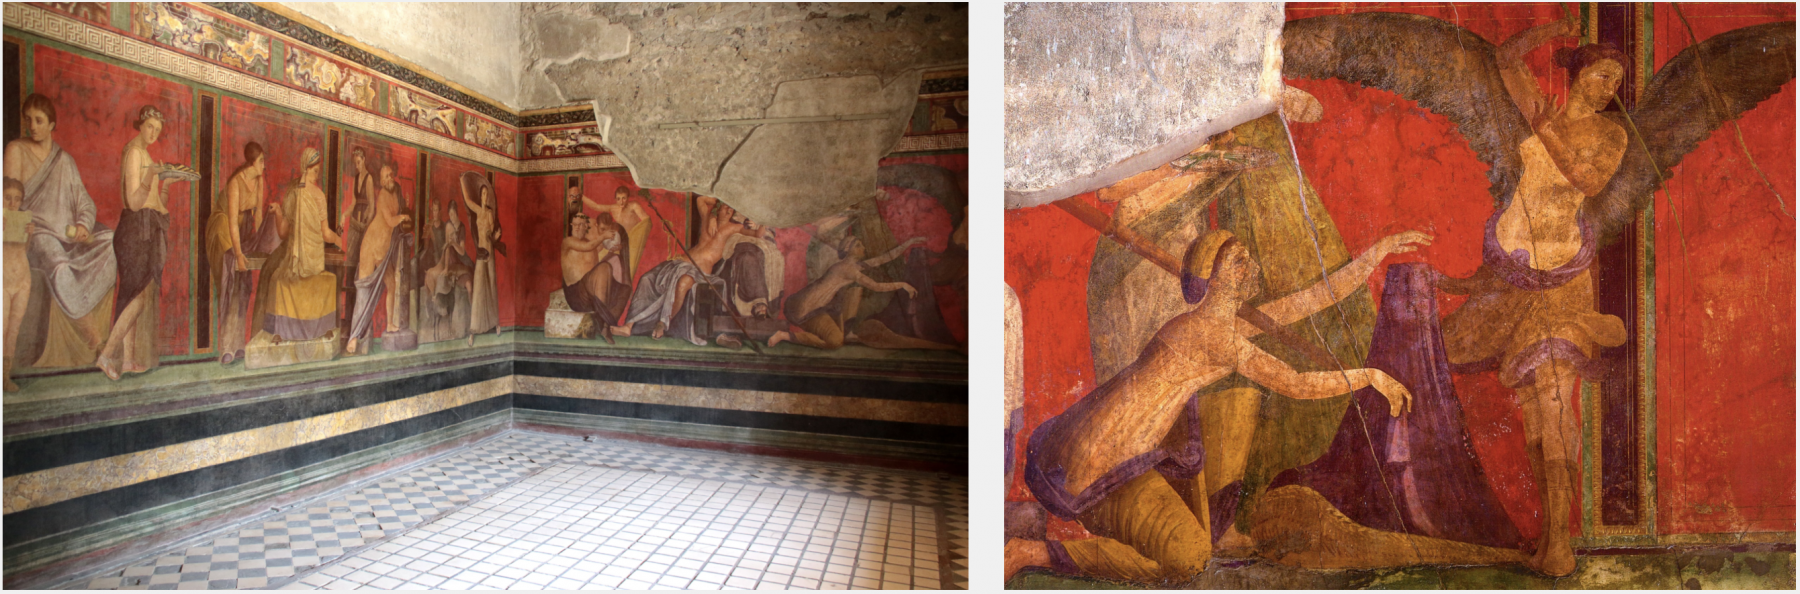 Fresco from the Sala di Grande Dipinto, Scene VII (pictured at right) in the Villa dei Misteri (Villa of the Mysteries), Pompeii (c. 60-50 B.C.)